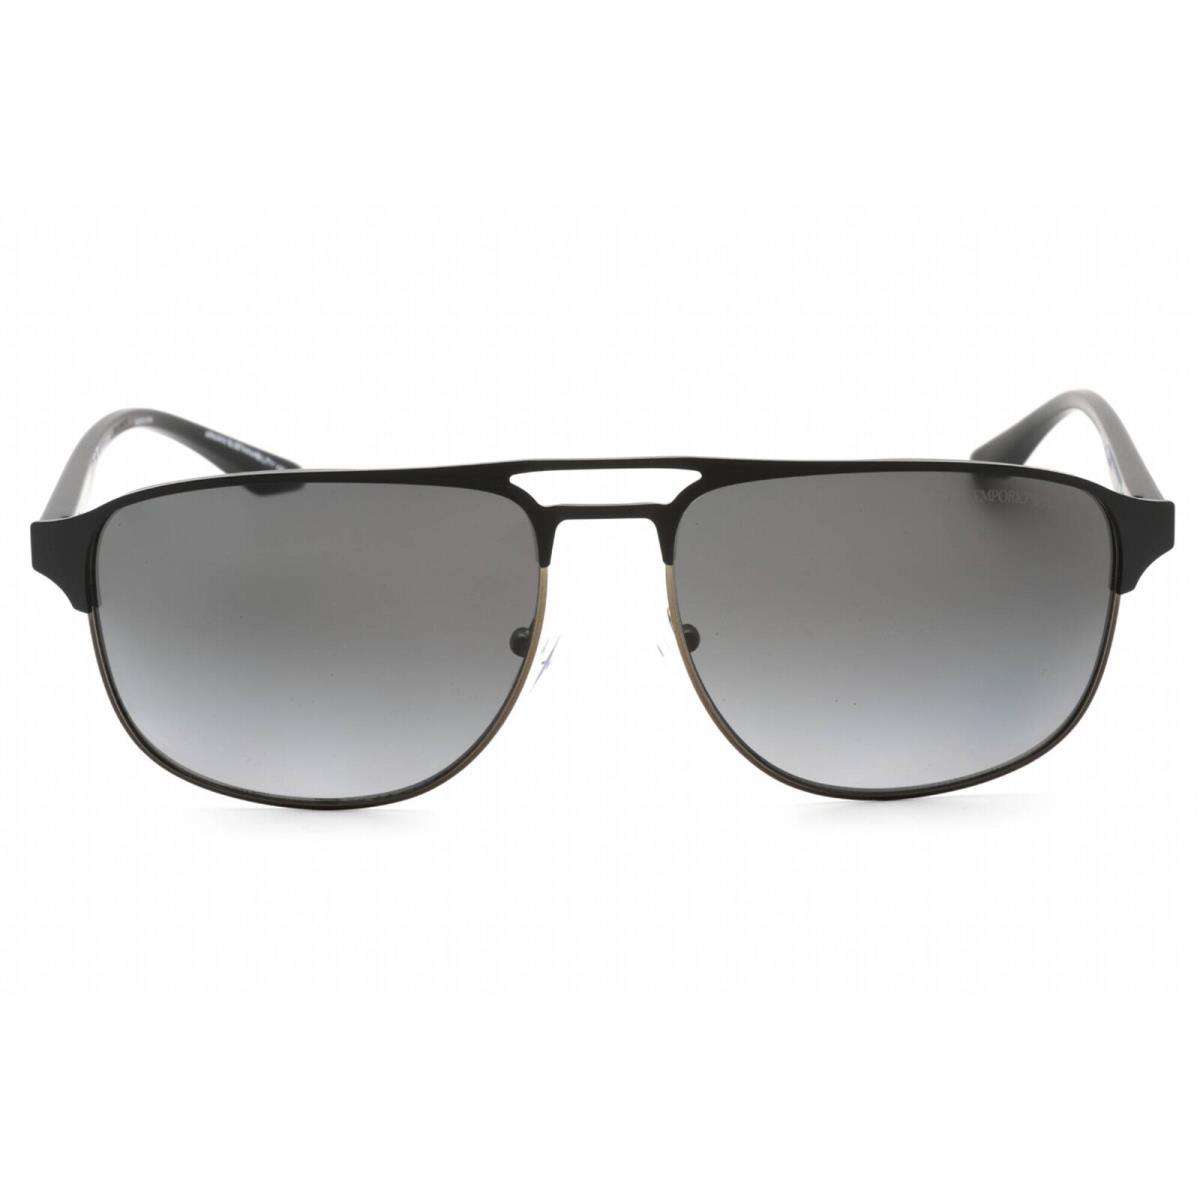 Emporio Armani Men`s Sunglasses Matte Gunmetal/black Metal Frame 0EA2144 336511